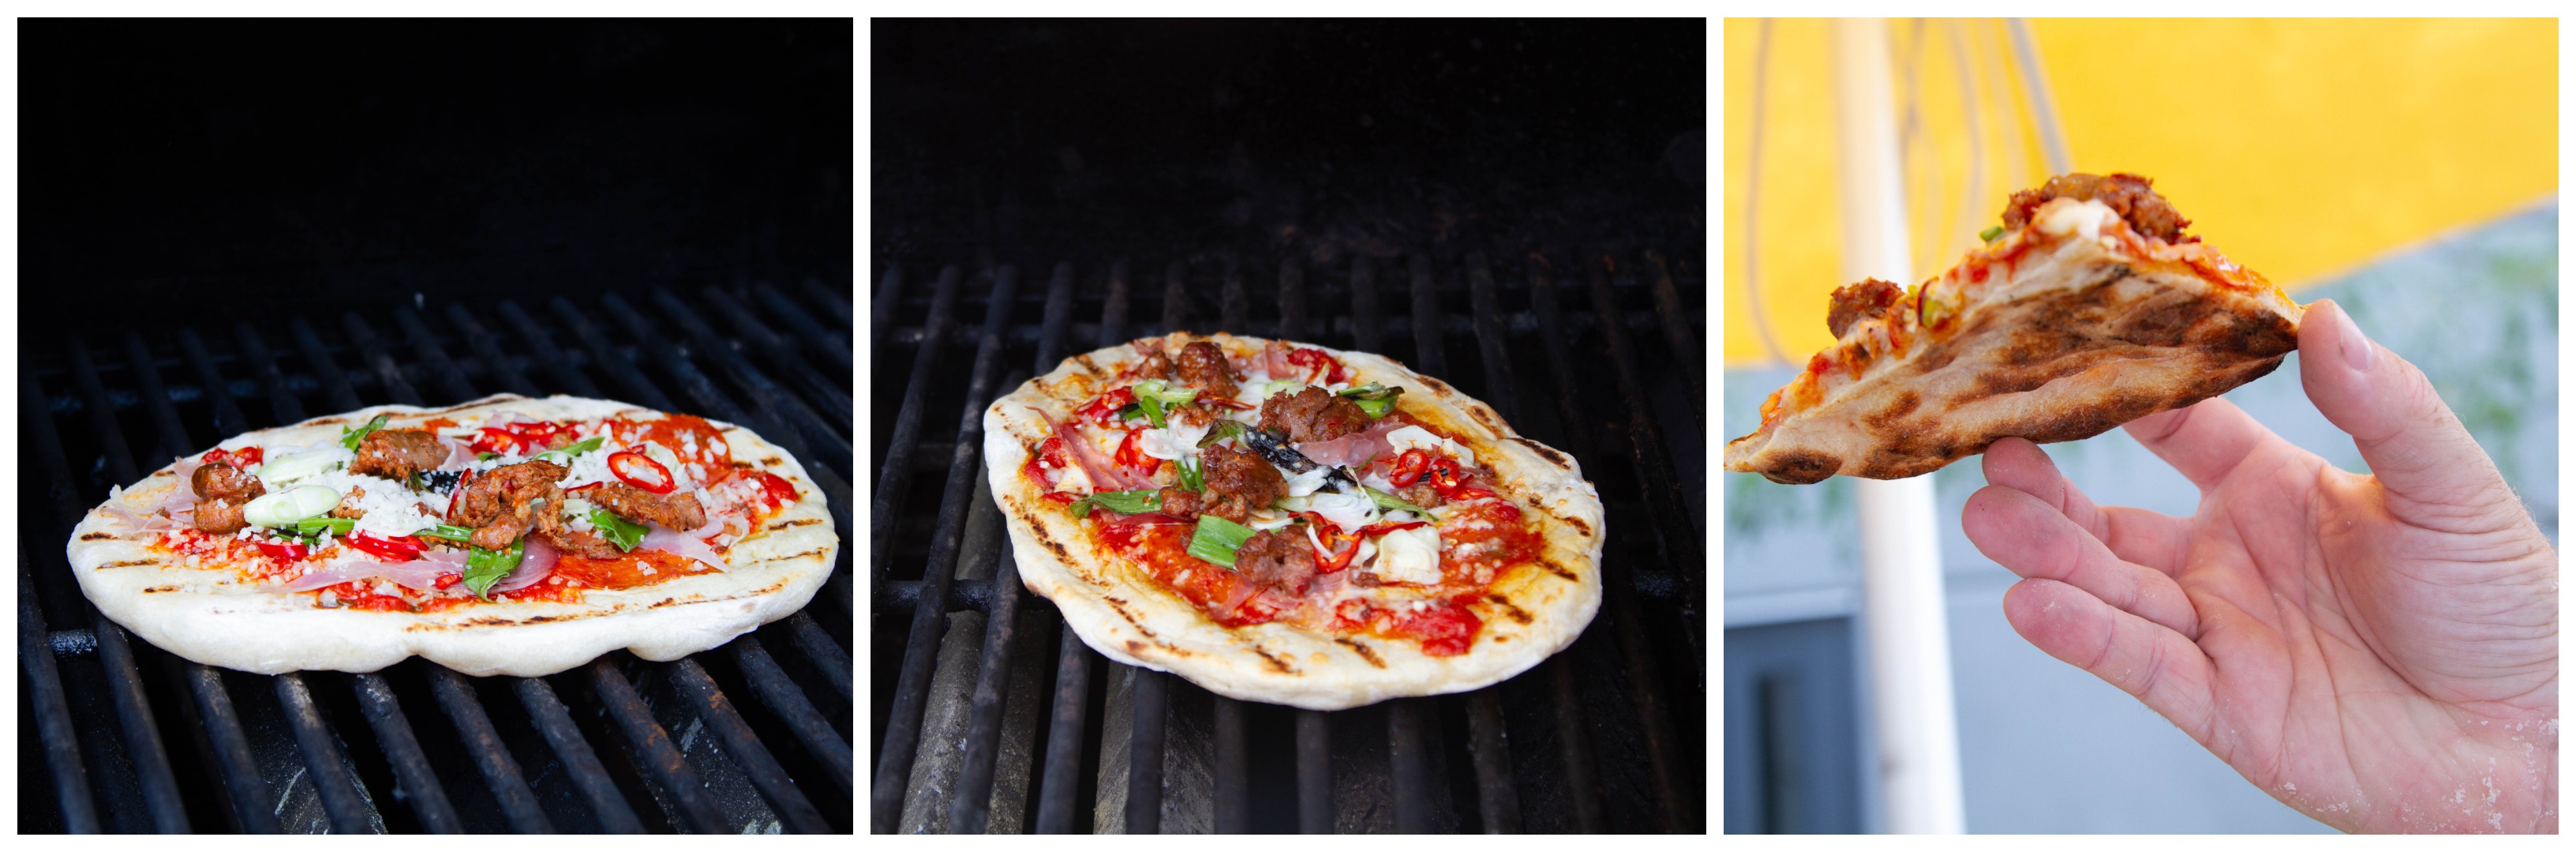 fire gange Begrænse Uoverensstemmelse Grilled pizza recipe: thermal basics, too